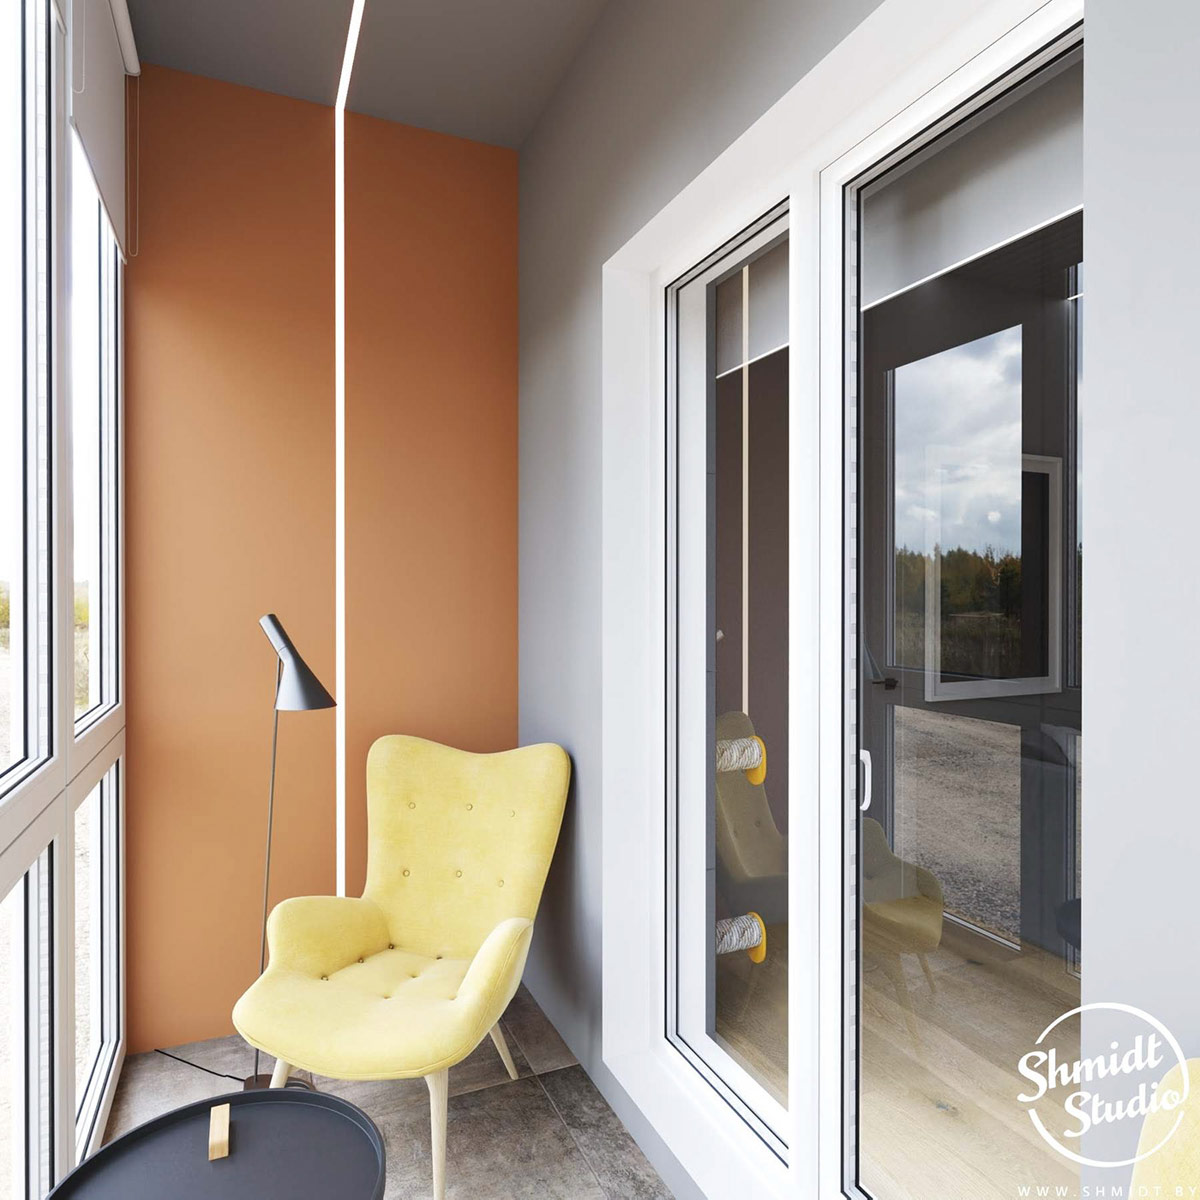 Giải pháp đèn LED tiếp tục được sử dụng ra khu vực ban công, nơi có bức tường sơn màu cam và chiếc ghế bành màu vàng êm ái làm góc đọc sách lãng mạn. Như vậy, nếu căn hộ đầu tiên kết hợp cả hai gam màu cam và xanh lam cho cùng một khu vực thì căn hộ thứ hai lại sử dụng từng màu riêng lẻ như một cách phân vùng chức năng khéo léo.